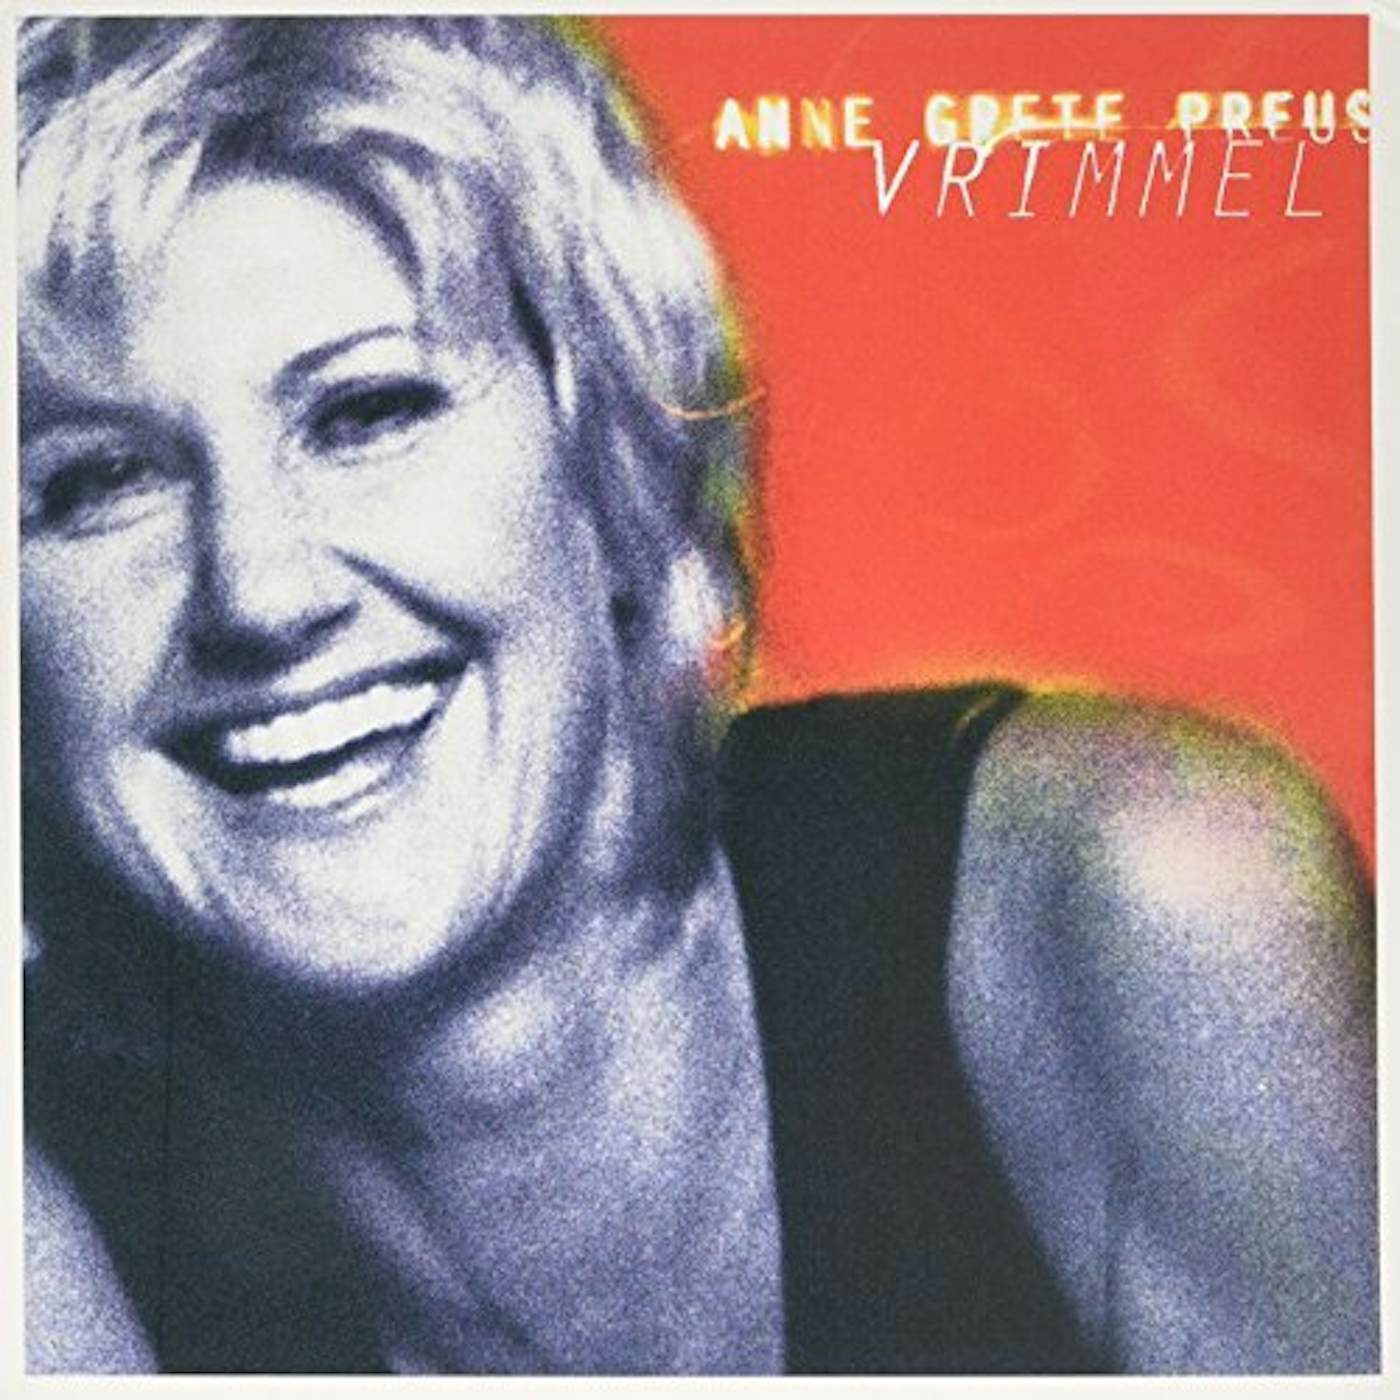 Anne Grete Preus Vrimmel Vinyl Record